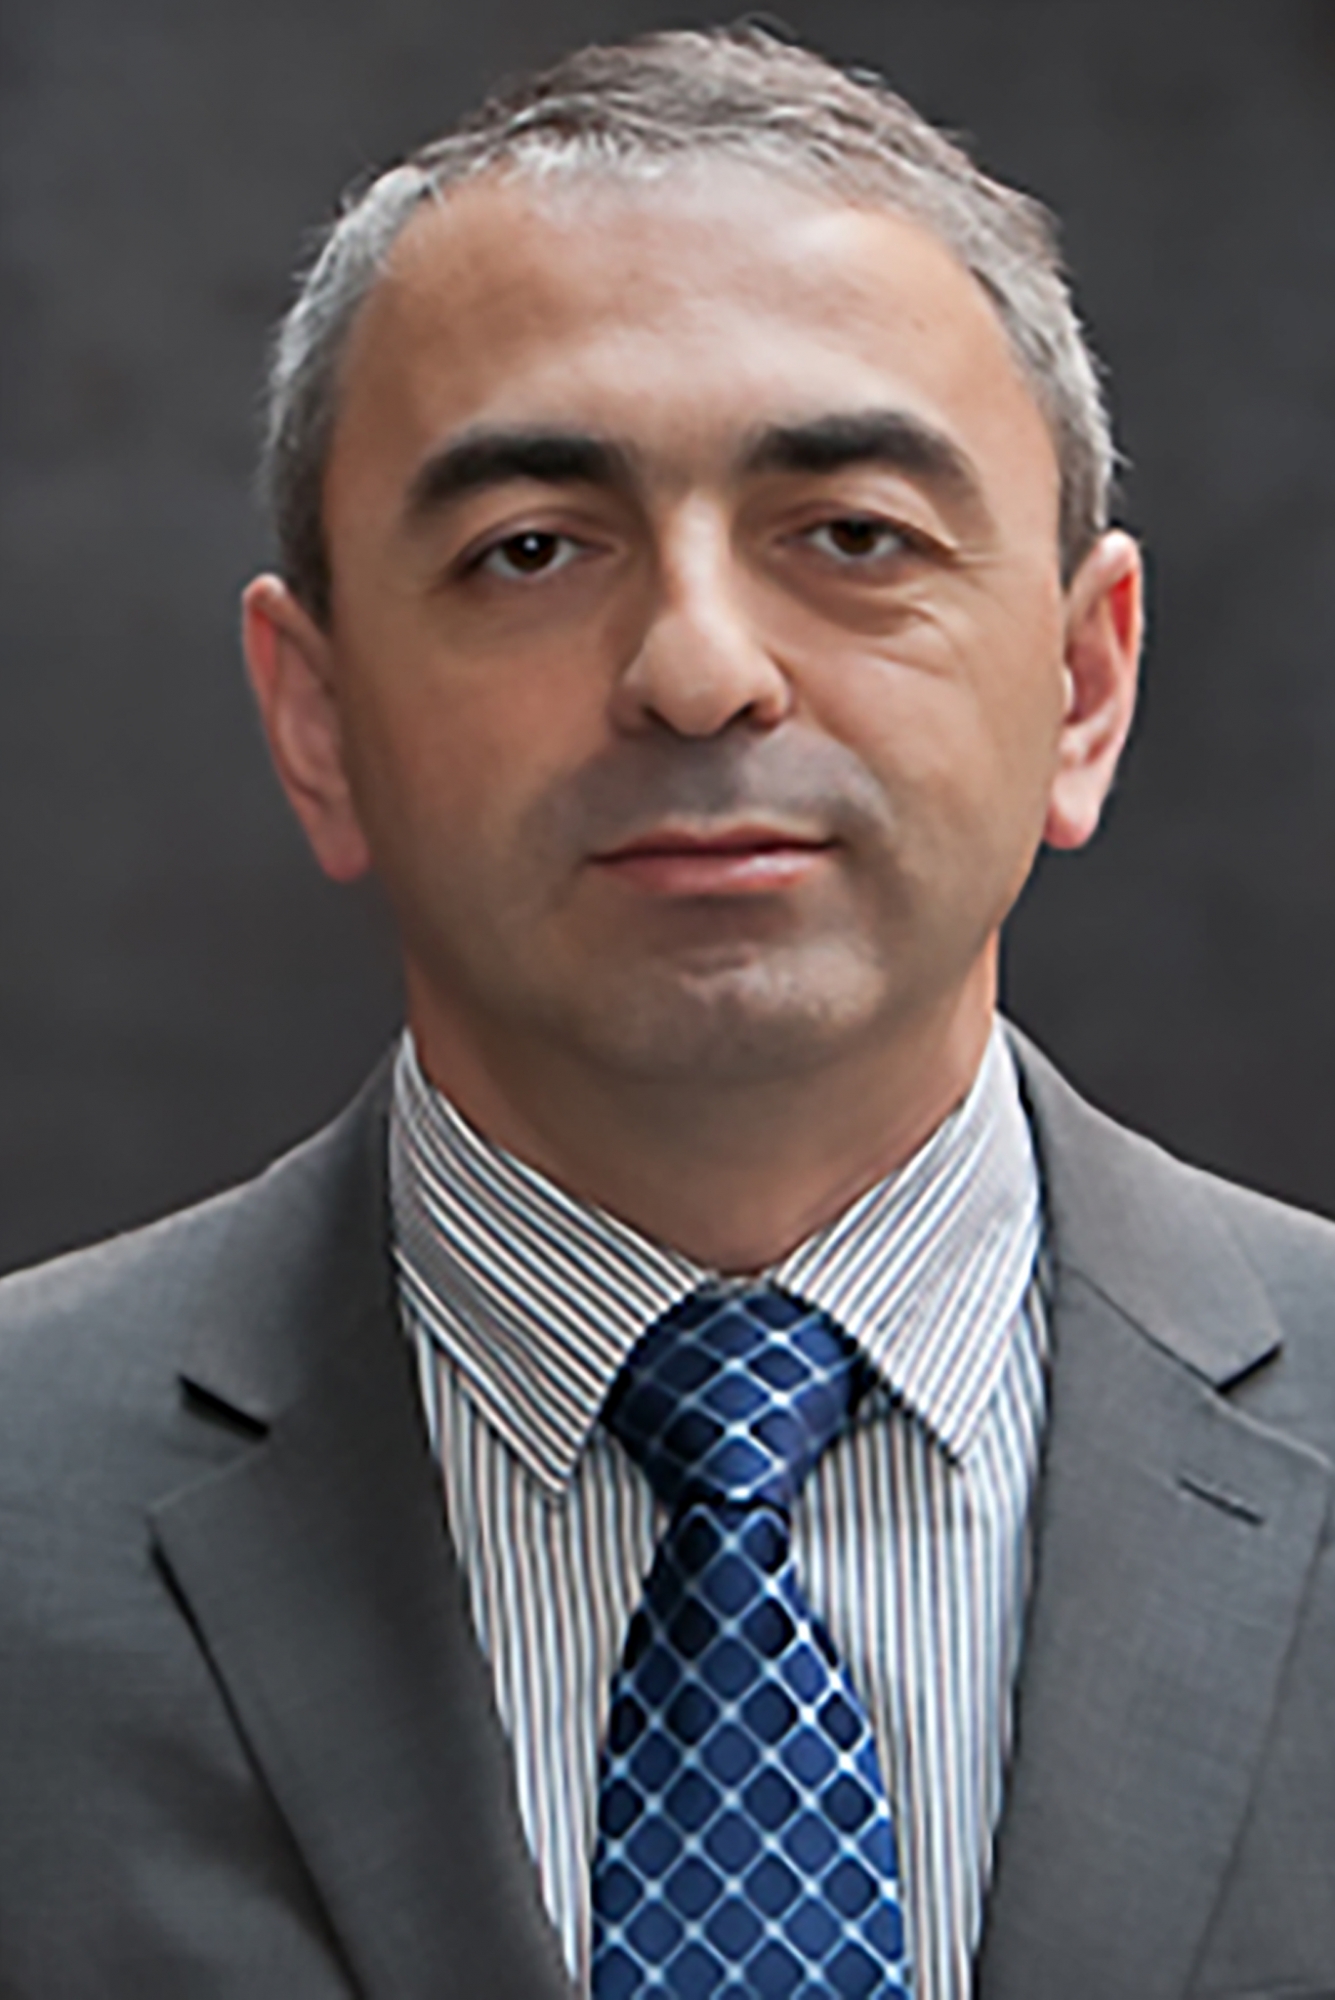 Headshot of Sufian Zhemukhov